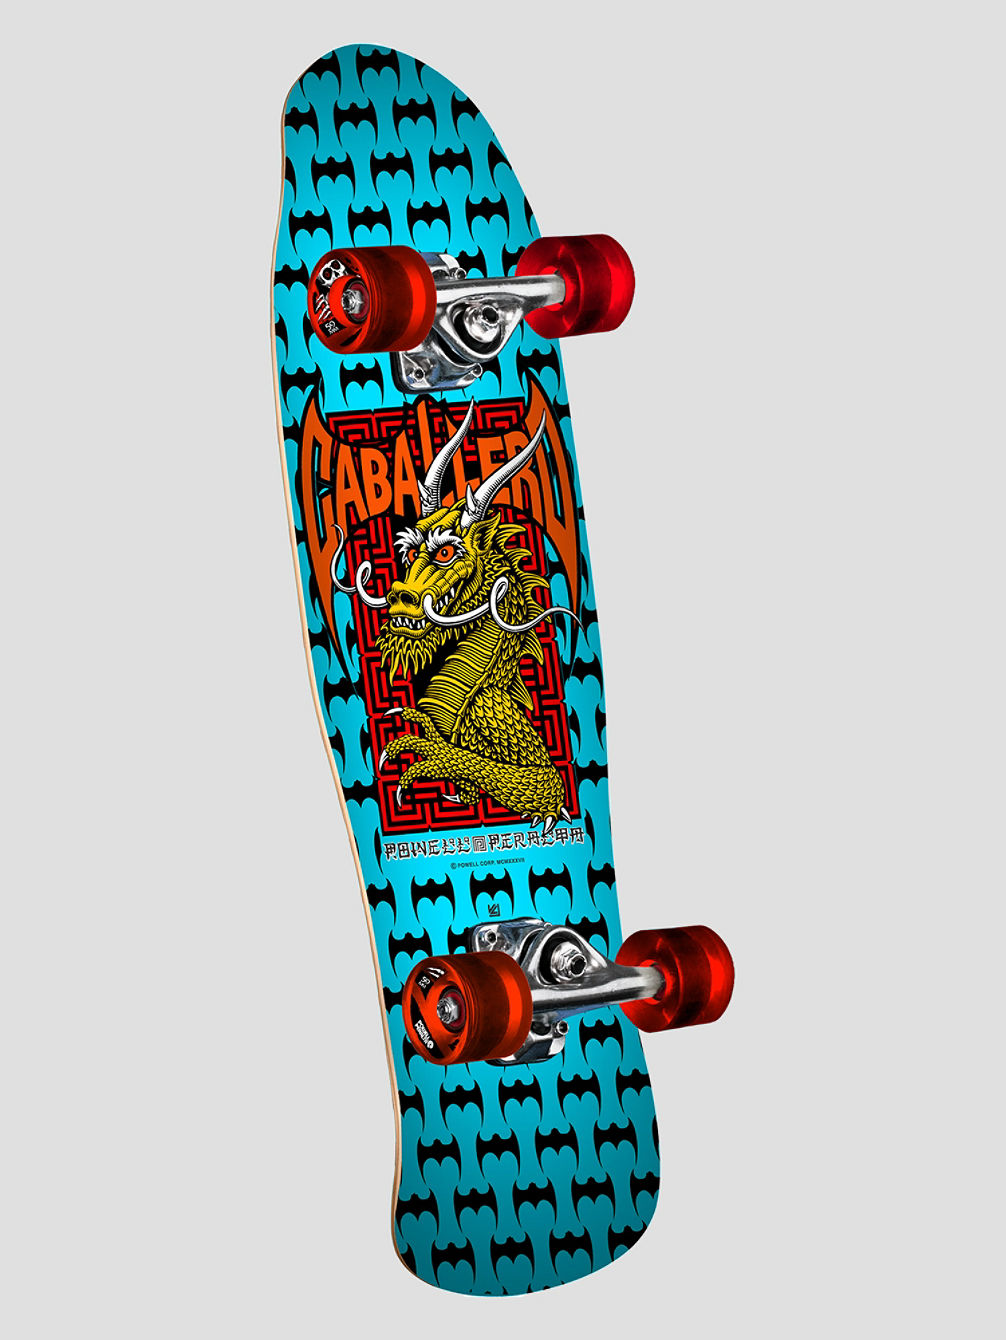 Mini-Cab-Dragon-Iii 8&amp;#034; Skateboard